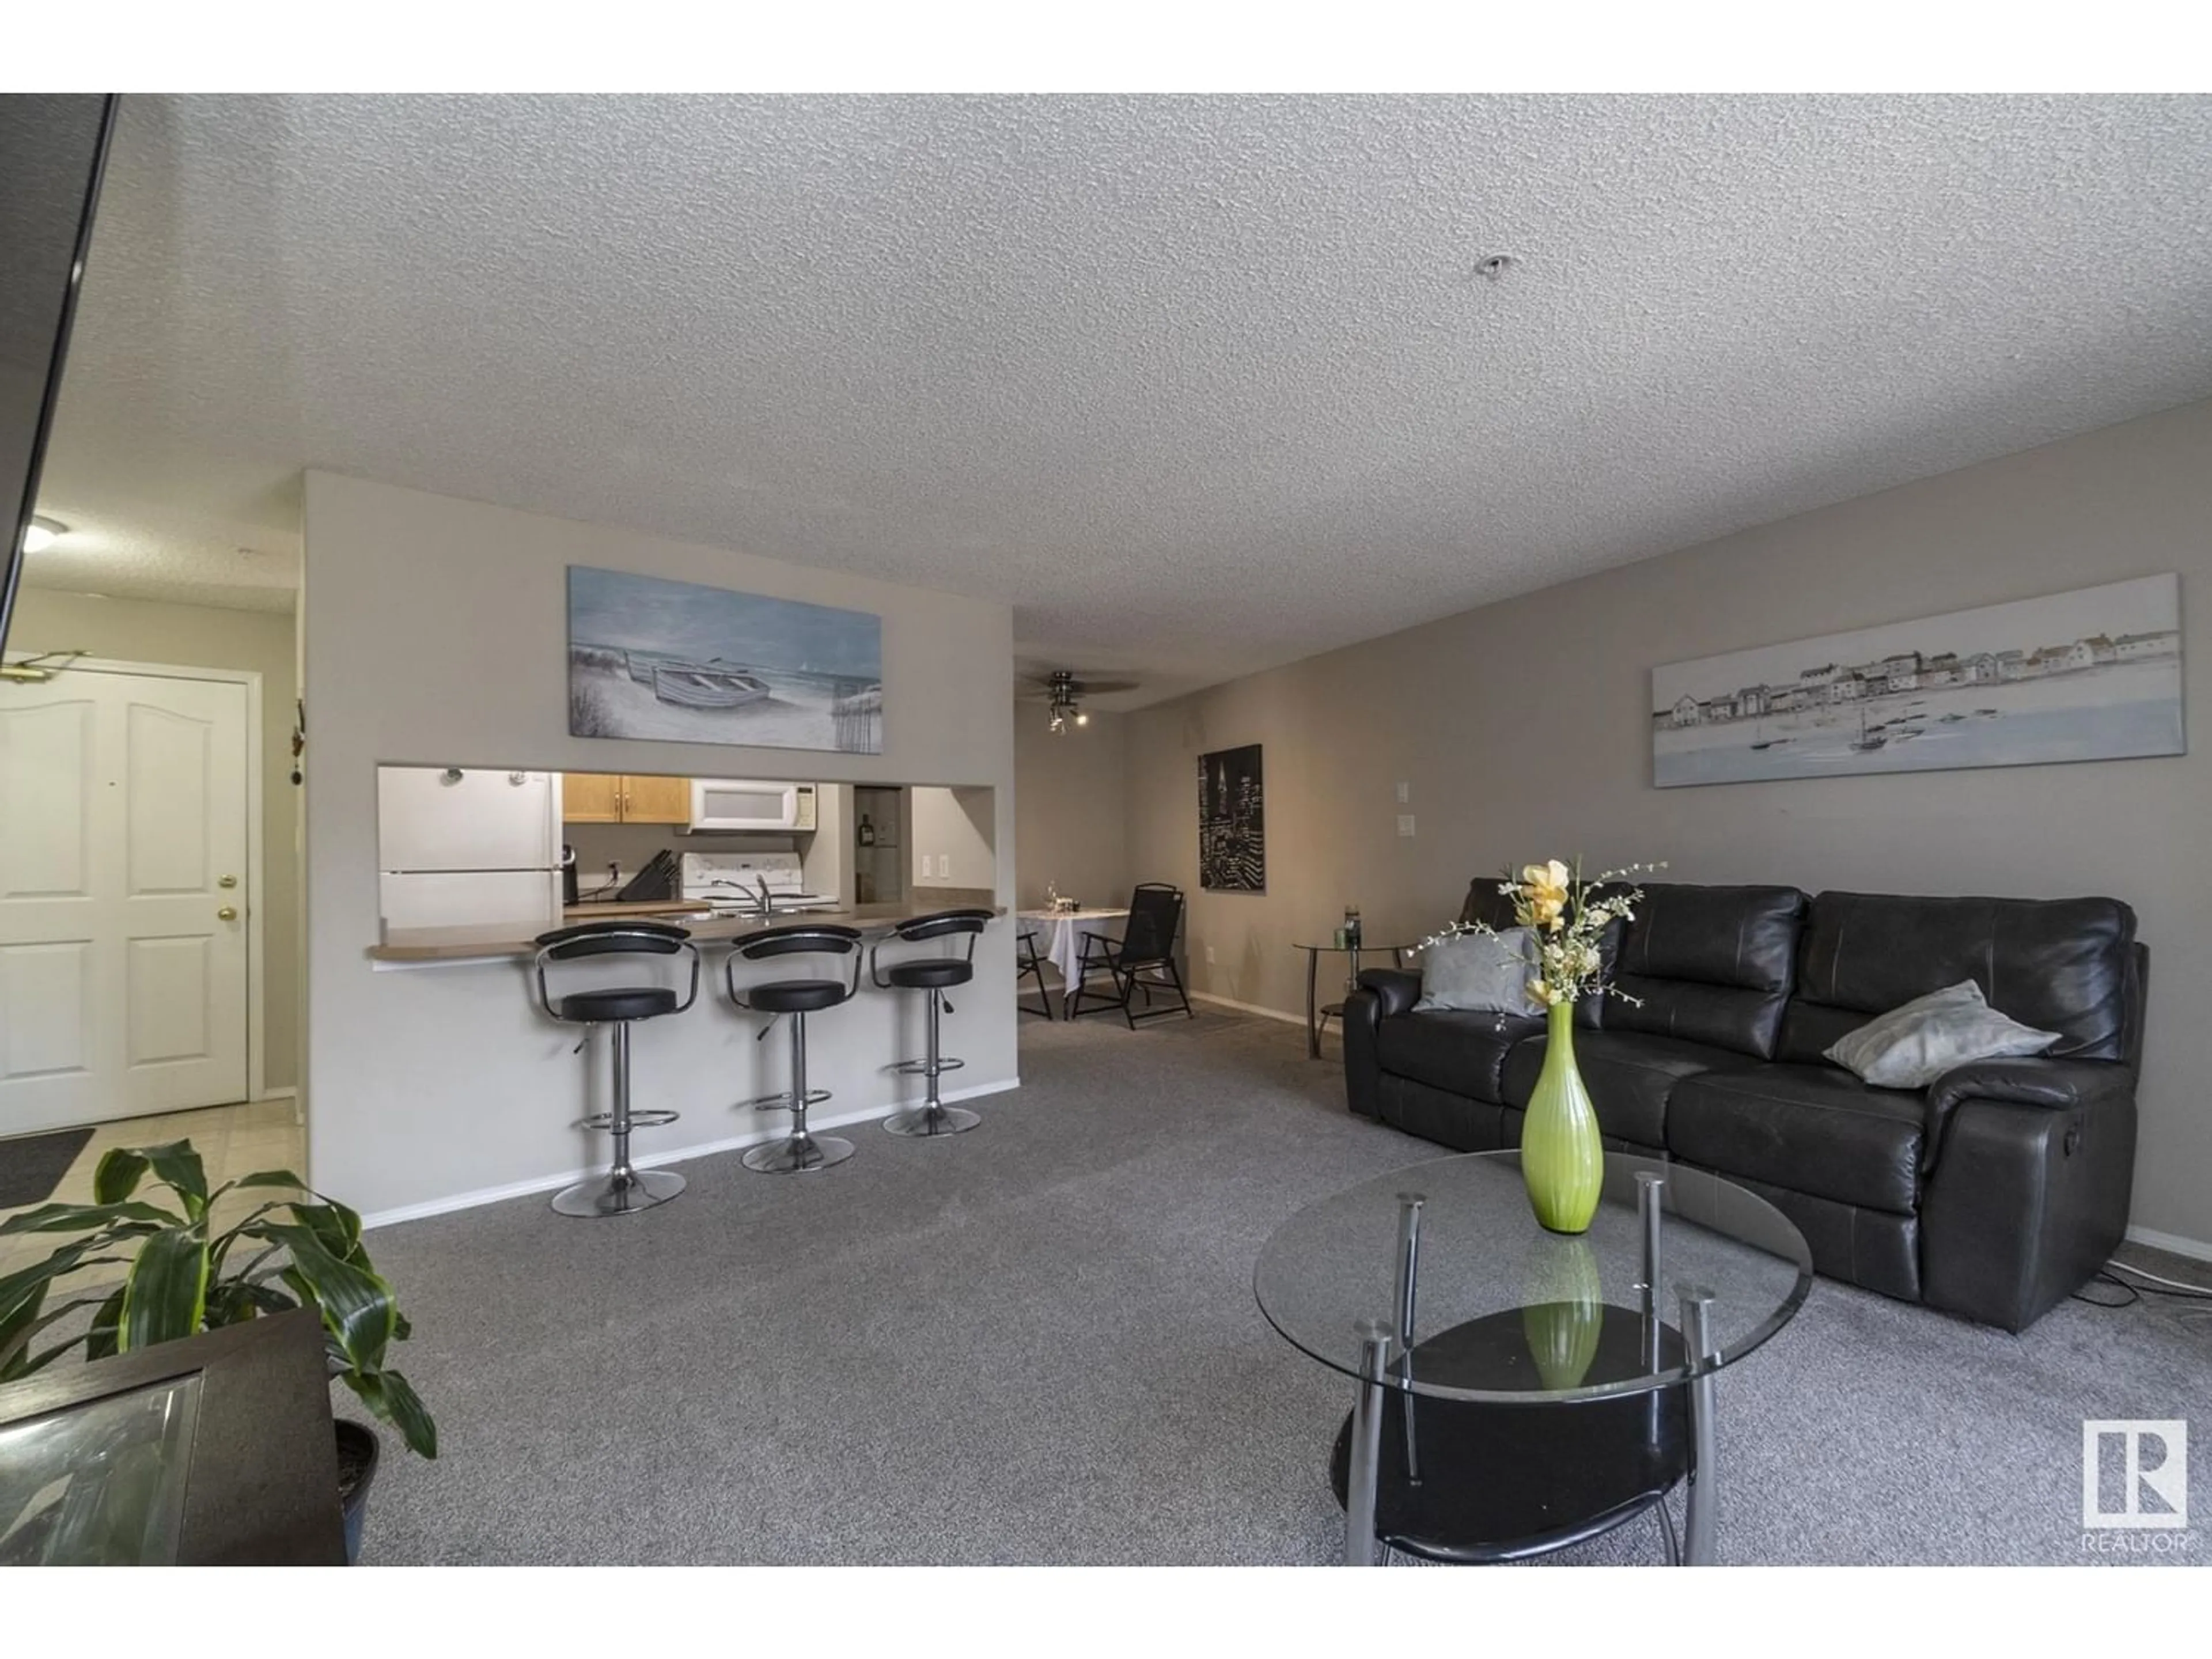 Living room for #209 16303 95 ST NW, Edmonton Alberta T5Z3V1